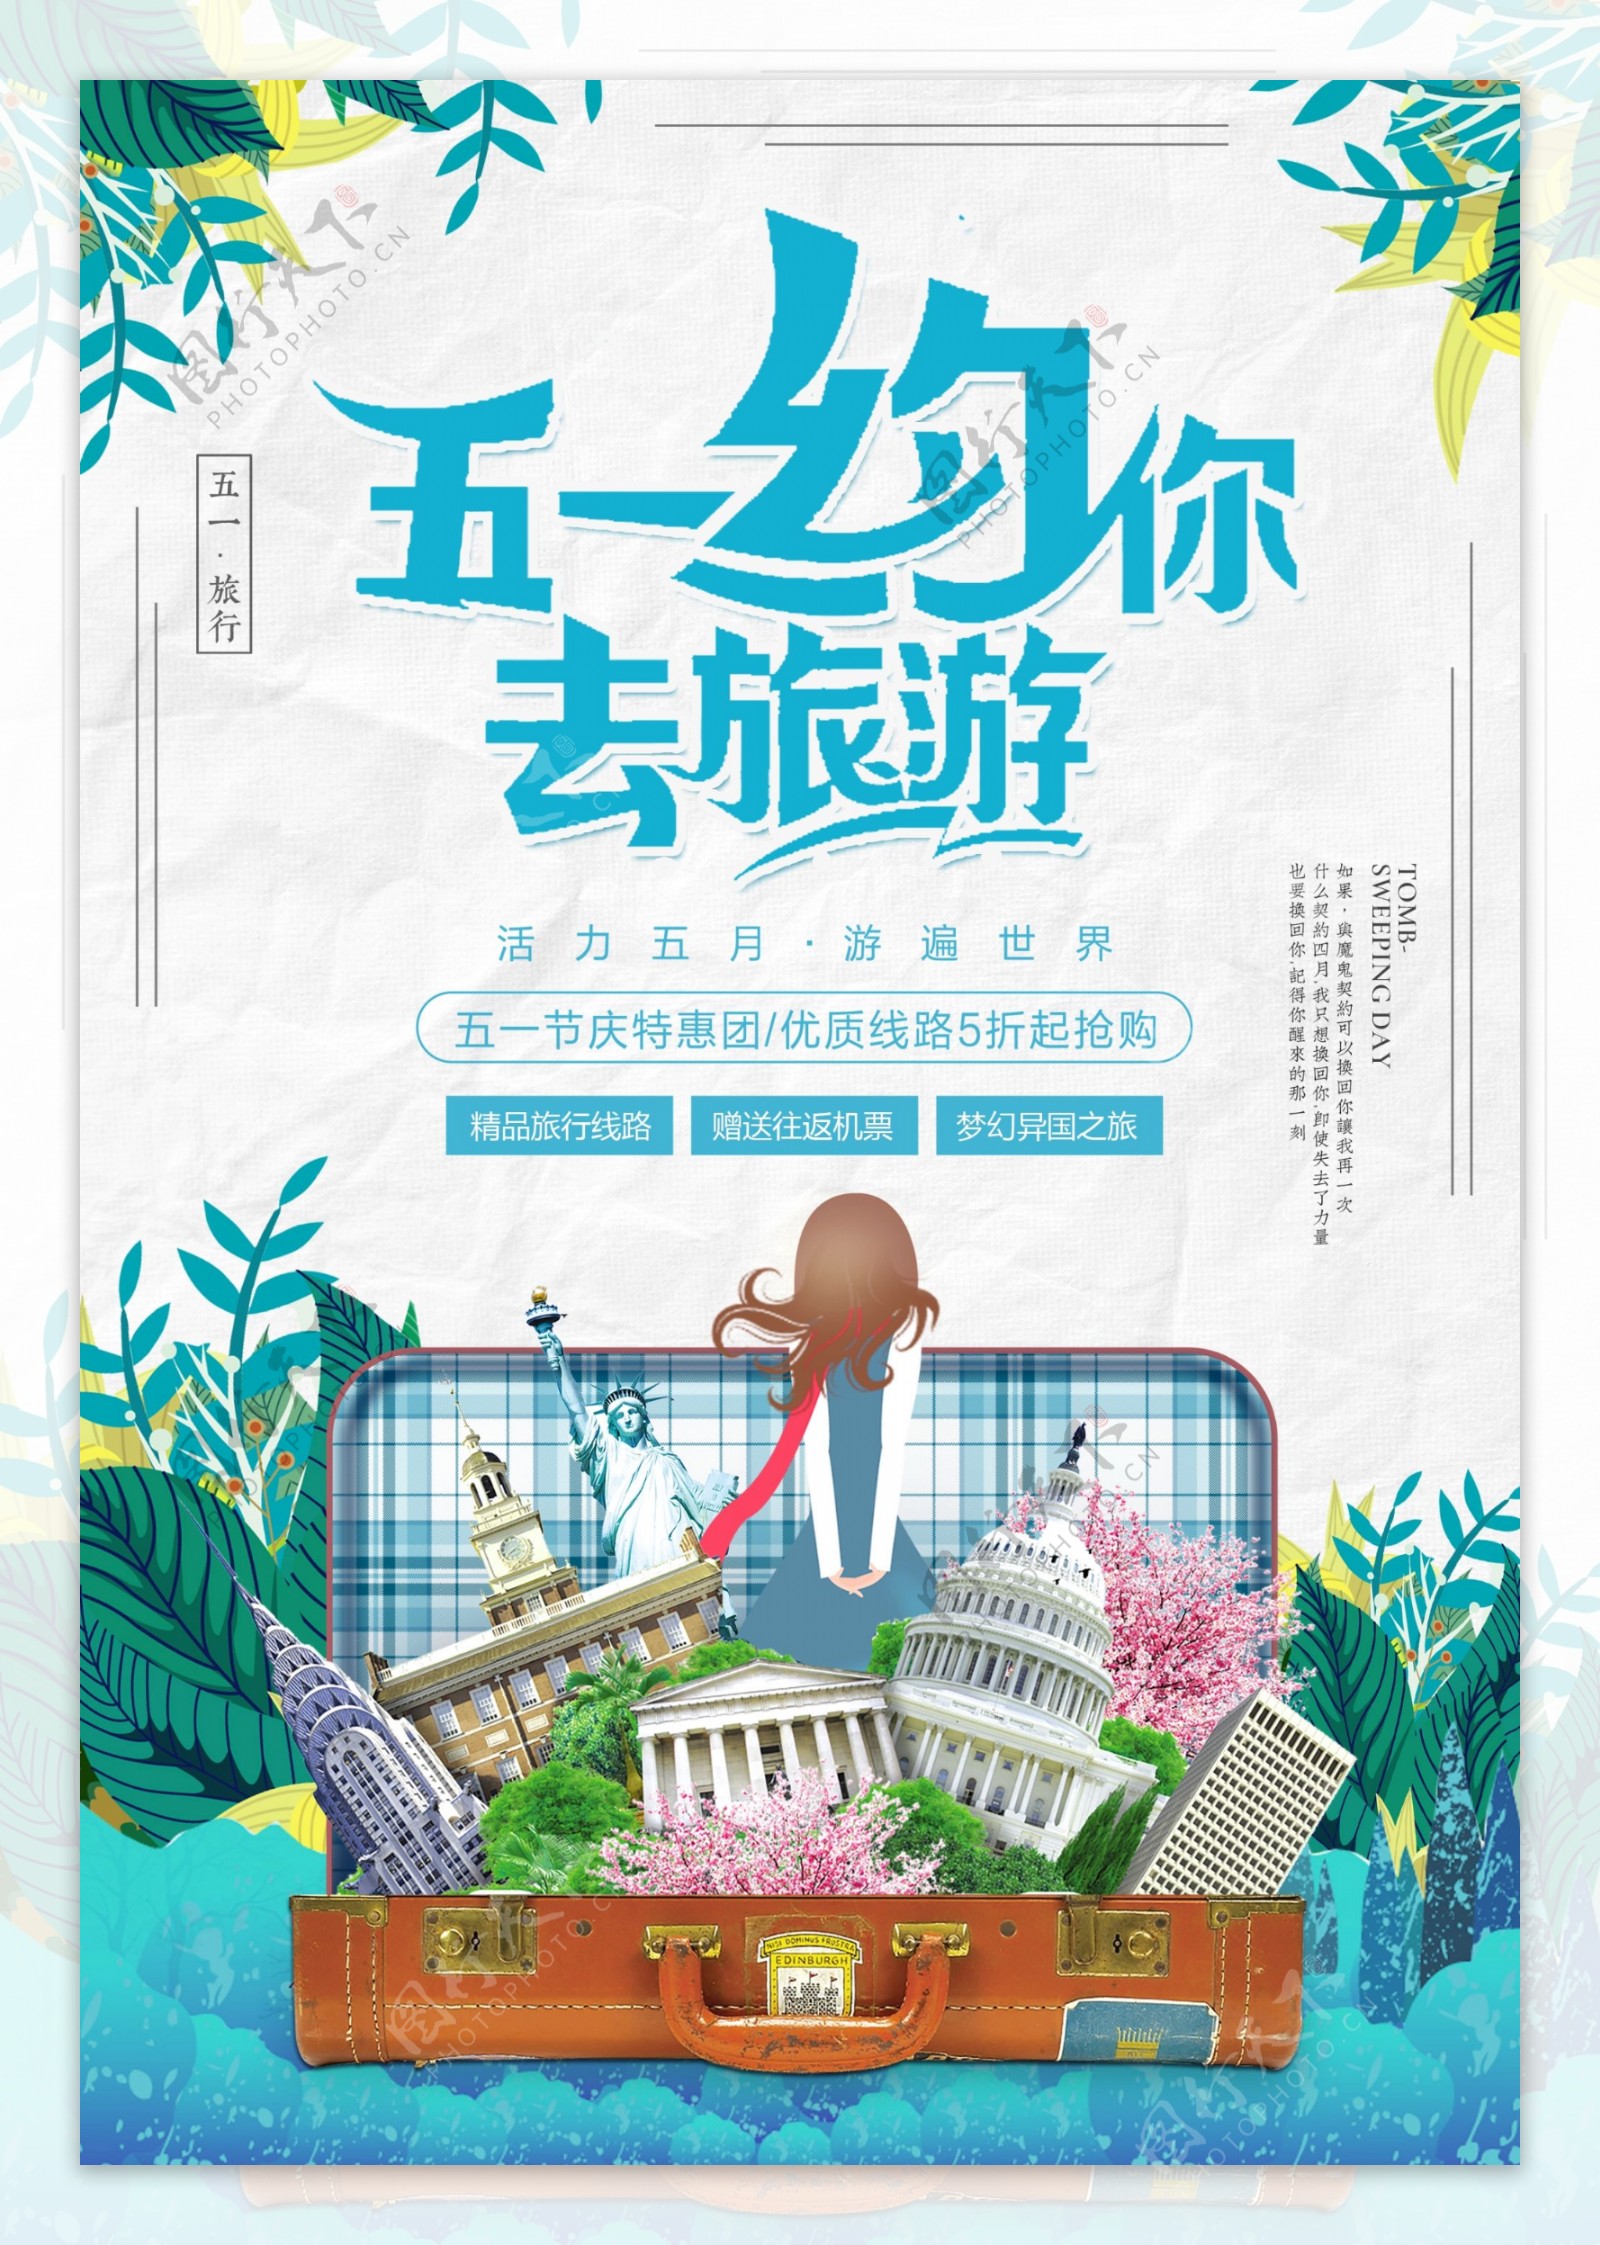 清新五一出游季旅游海报设计